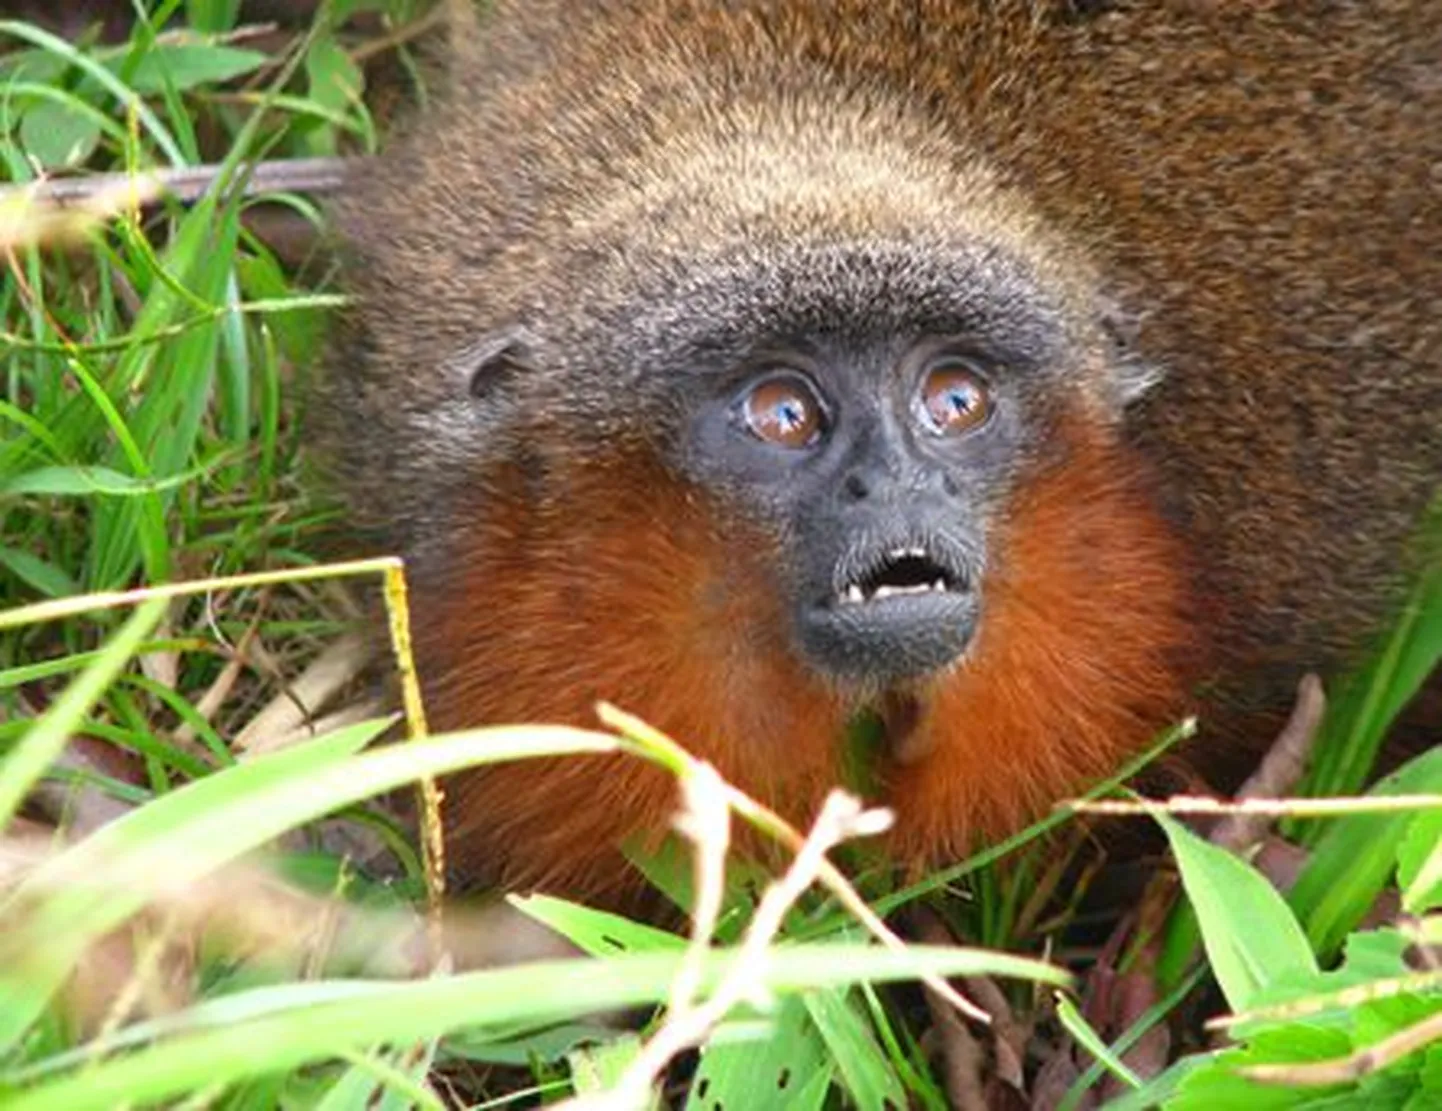 Amazonasest leitud umbes kassisuurune Caquetá titi-ahv, kelle järglased nurruvad väiksena nagu kassid.